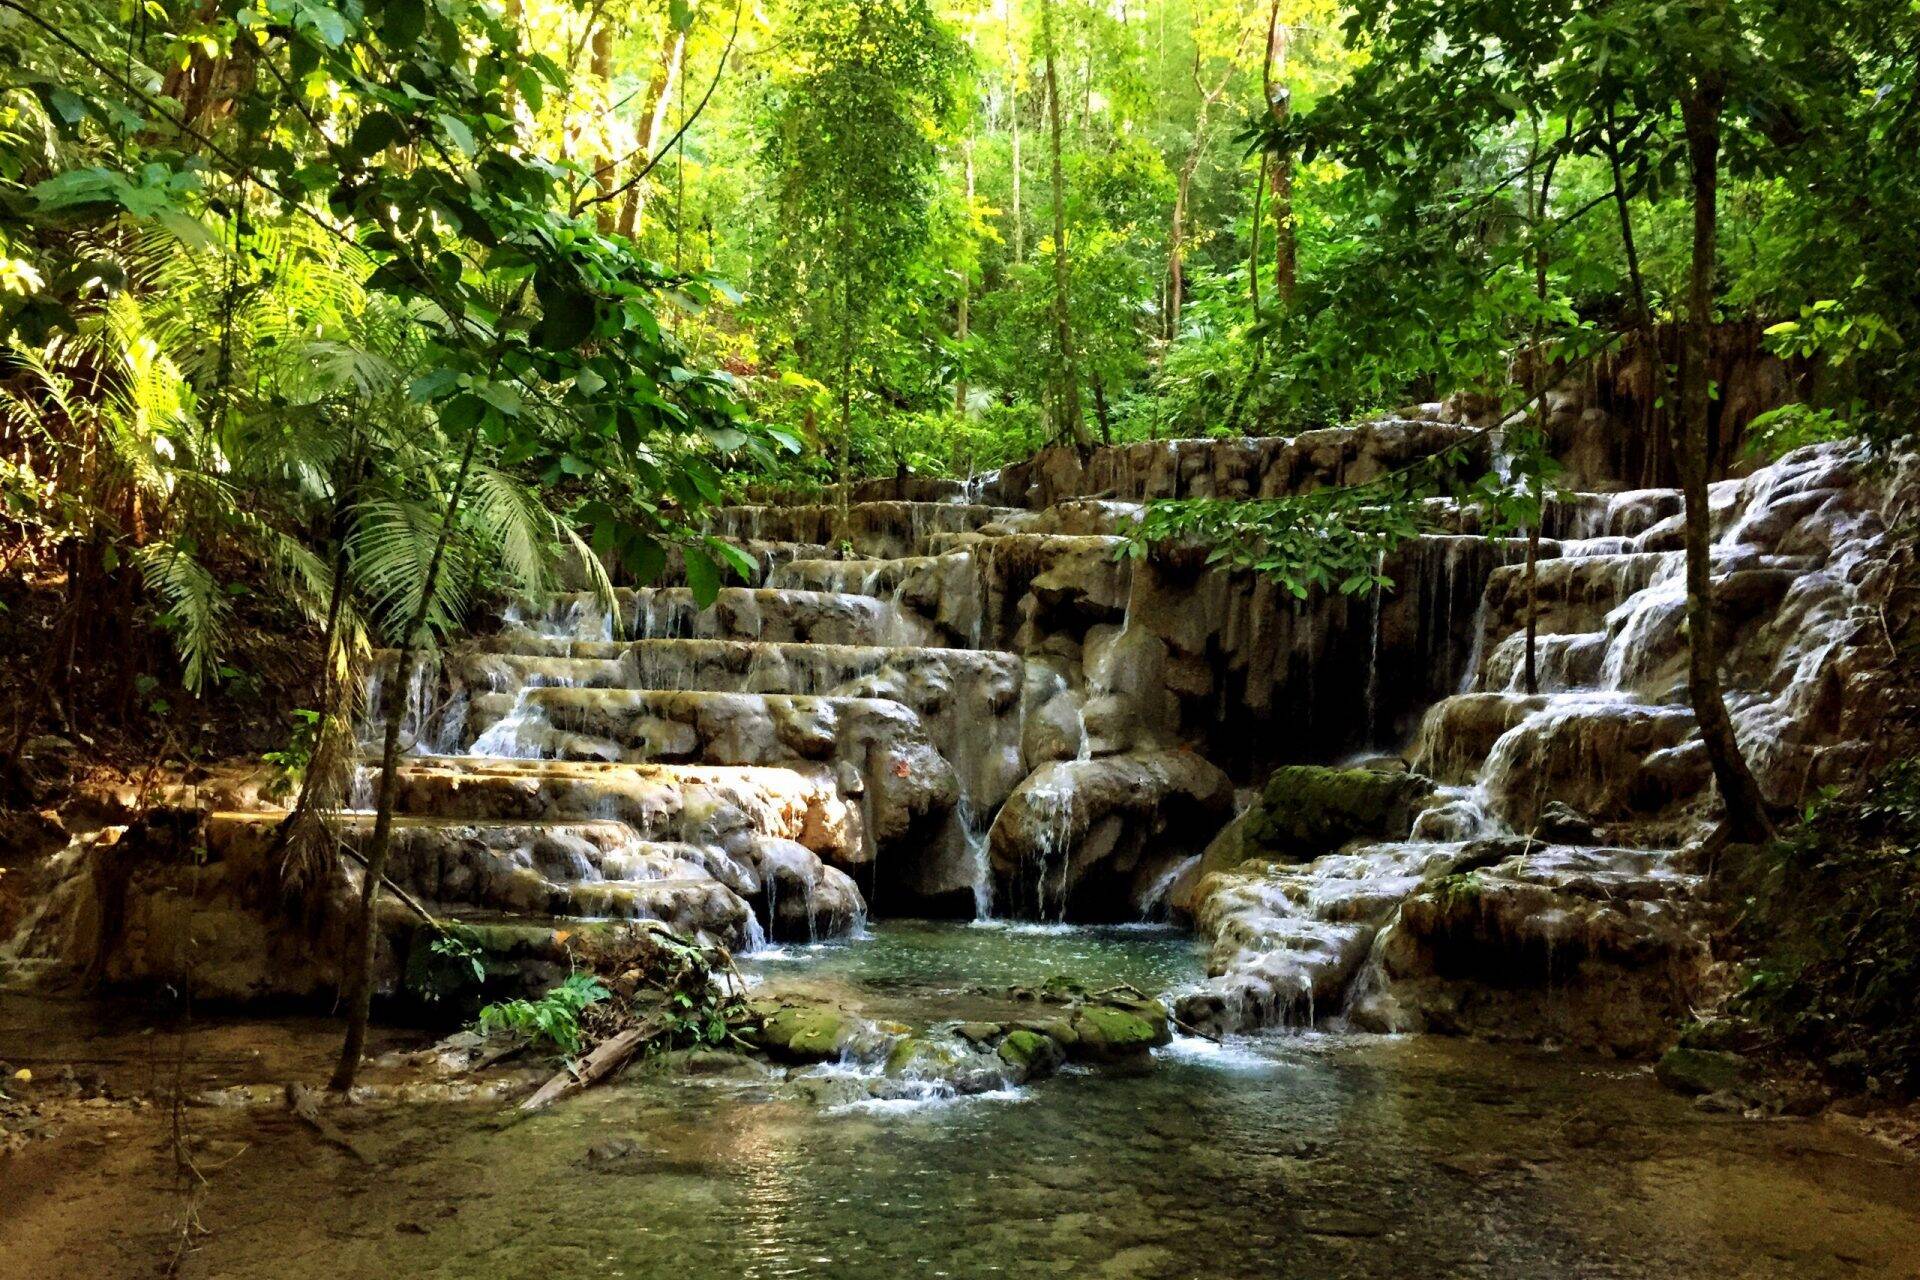 Kleiner Wasserfall im Dschungel von Palenque, Mexico. Aufgenommen von Daniela Vey.